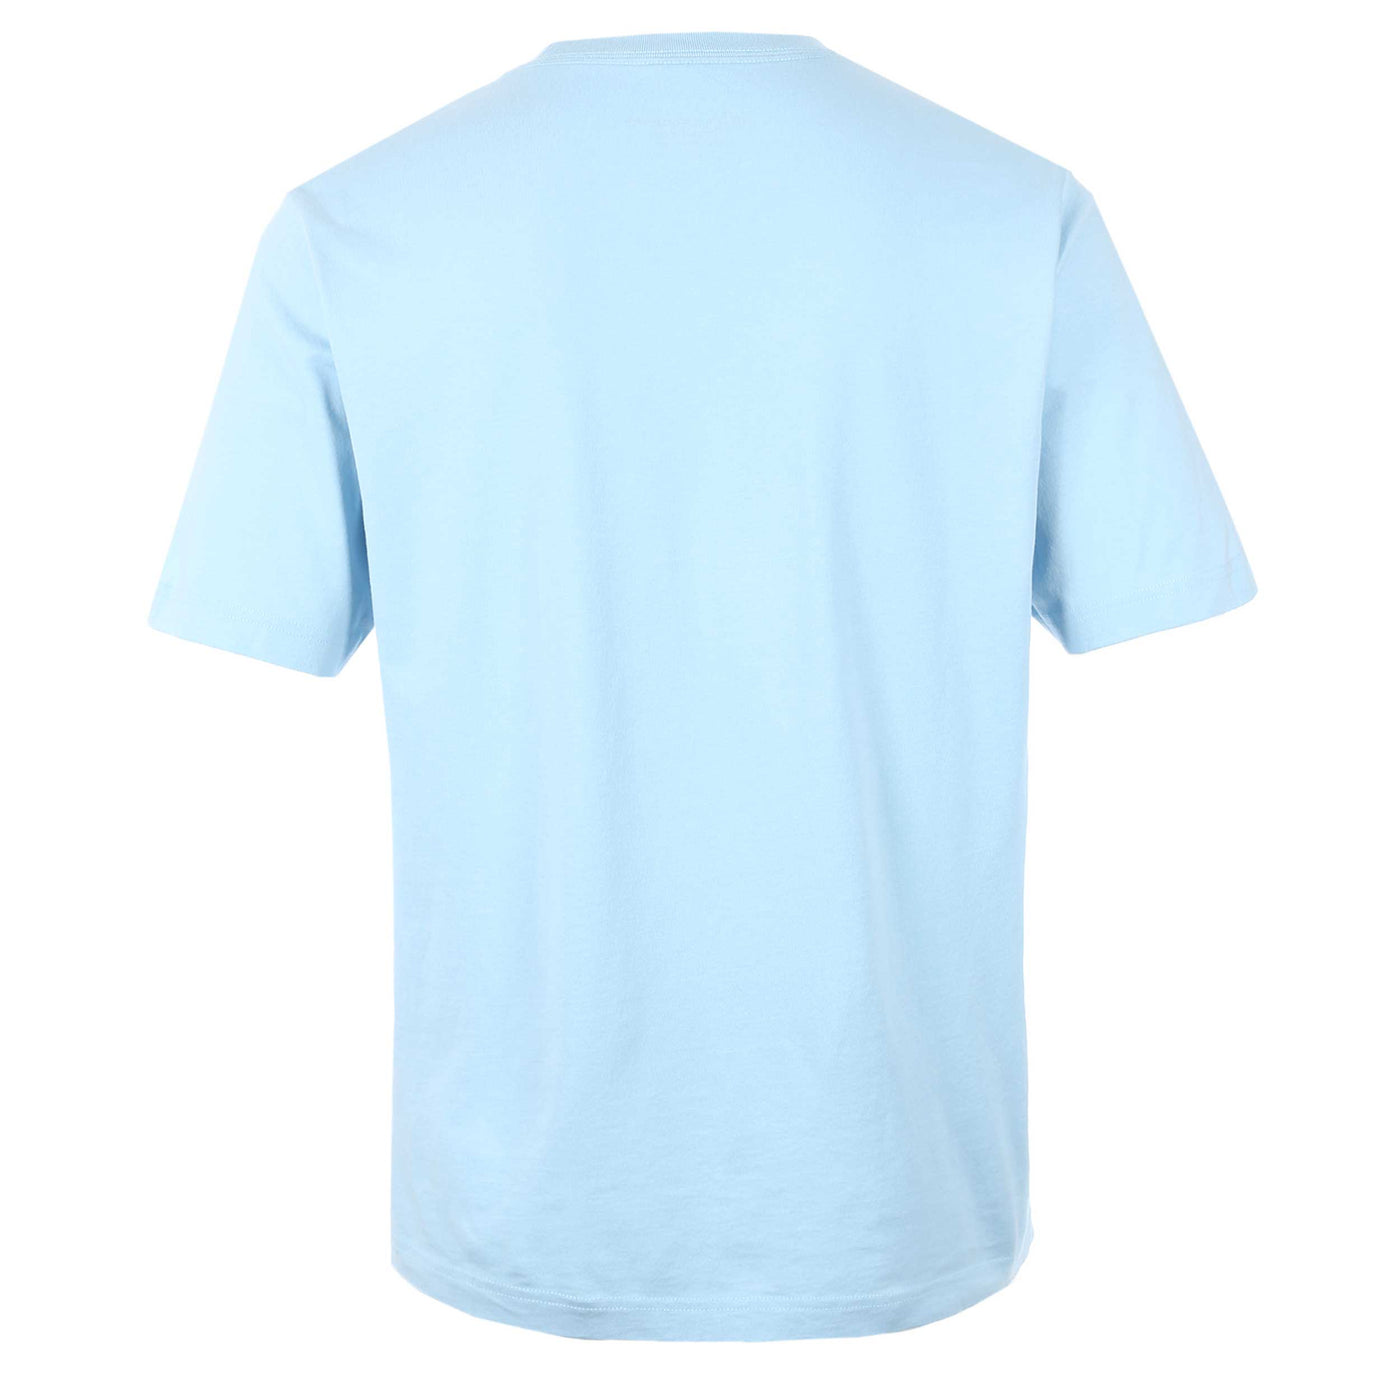 Moose Knuckles Henri T Shirt in Sky Blue Back